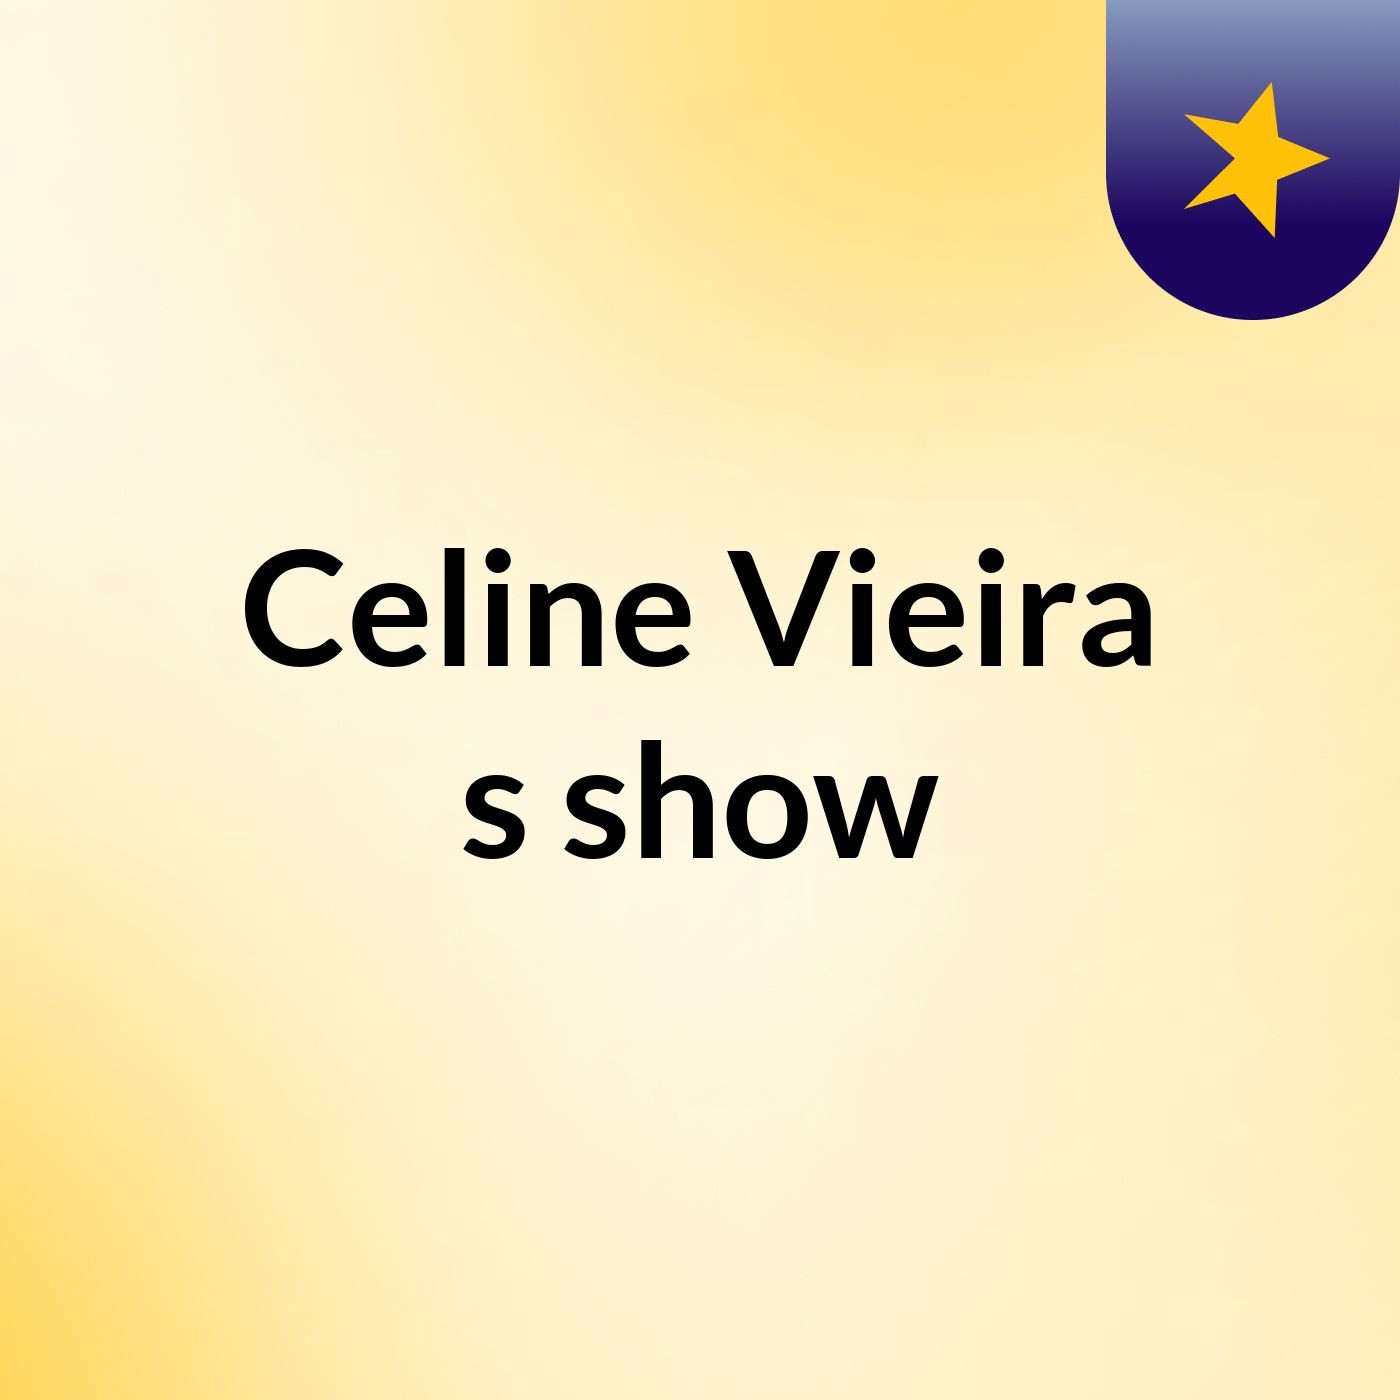 Celine Vieira's show